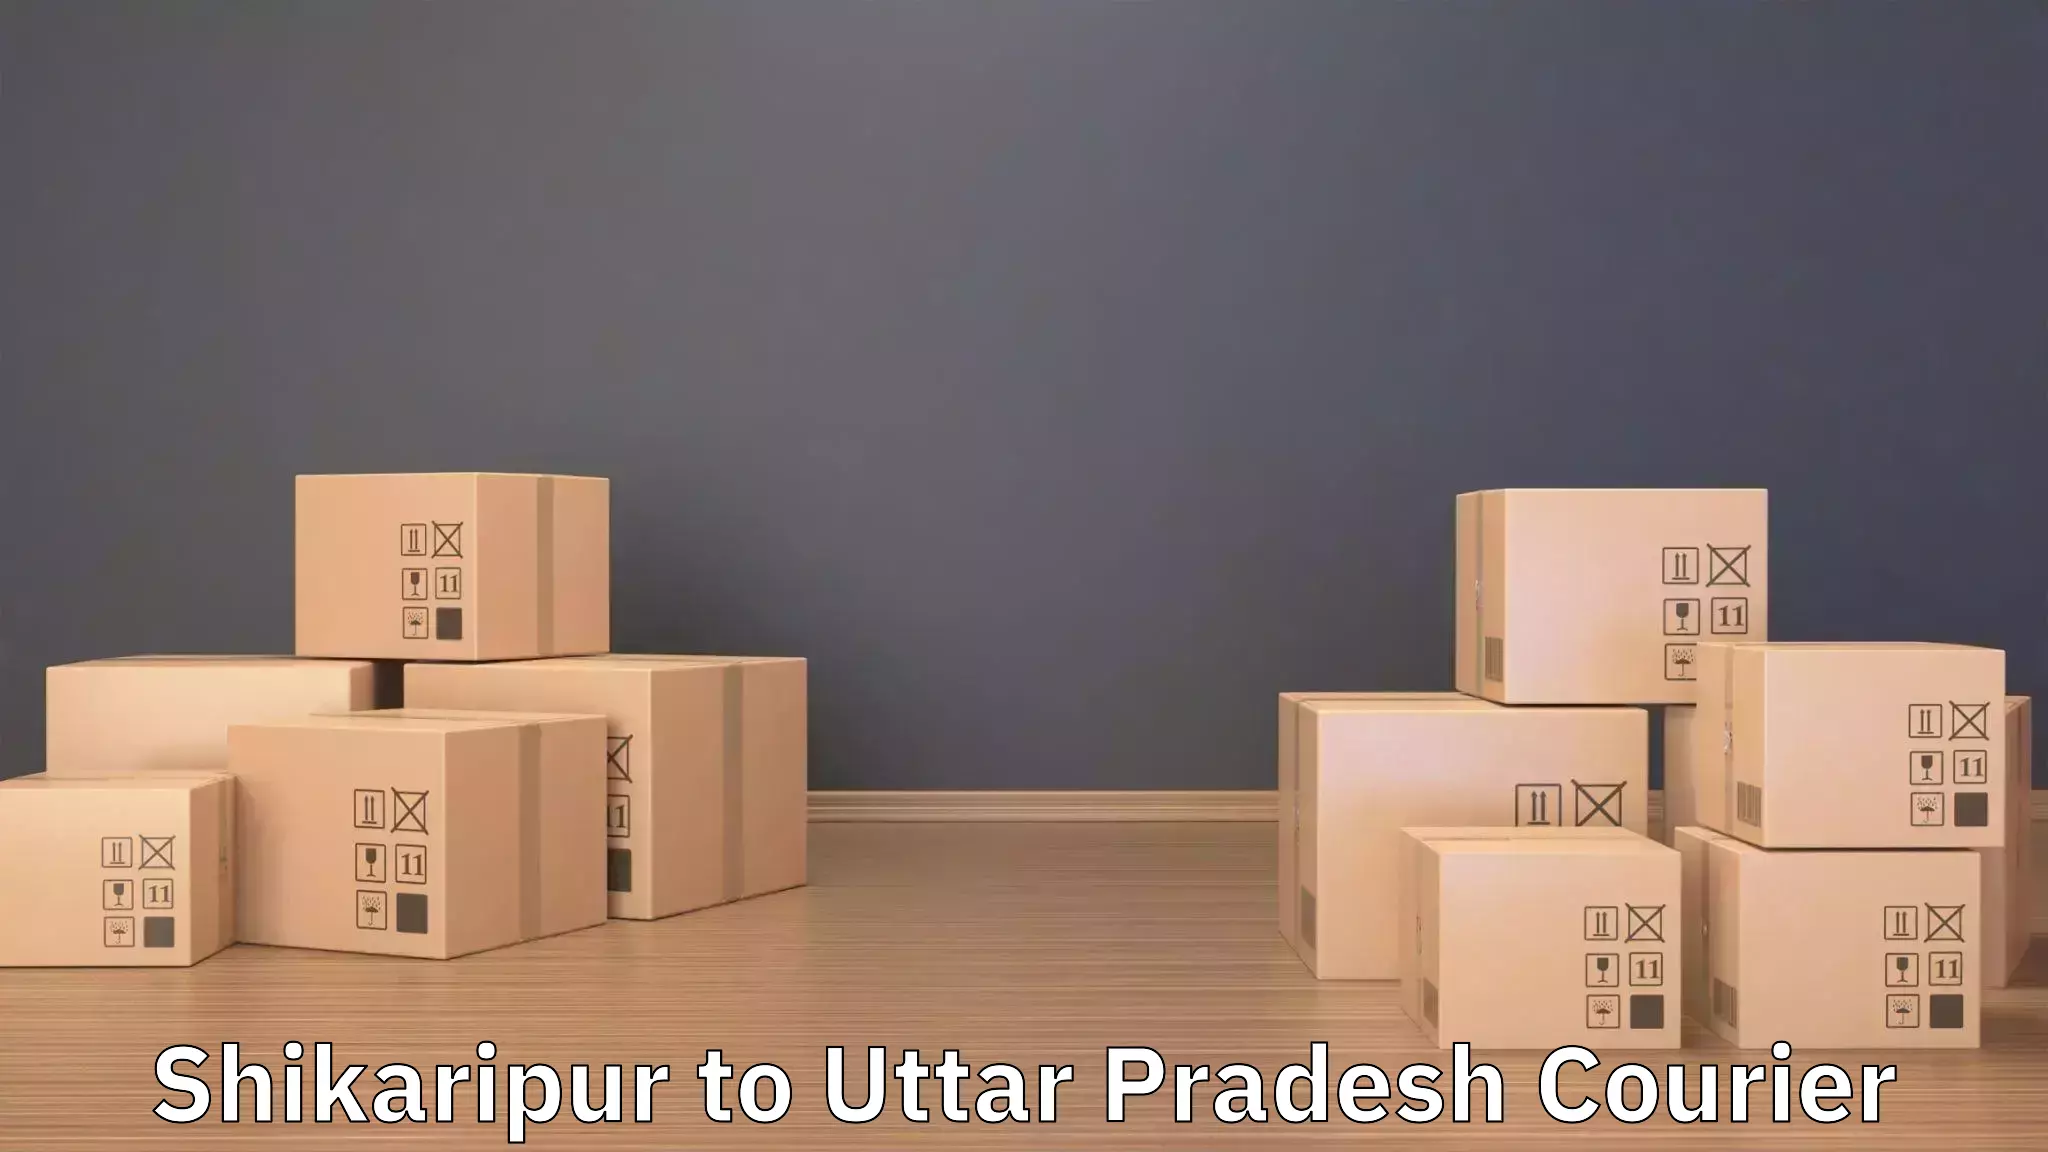 Premium furniture transport in Shikaripur to Noida